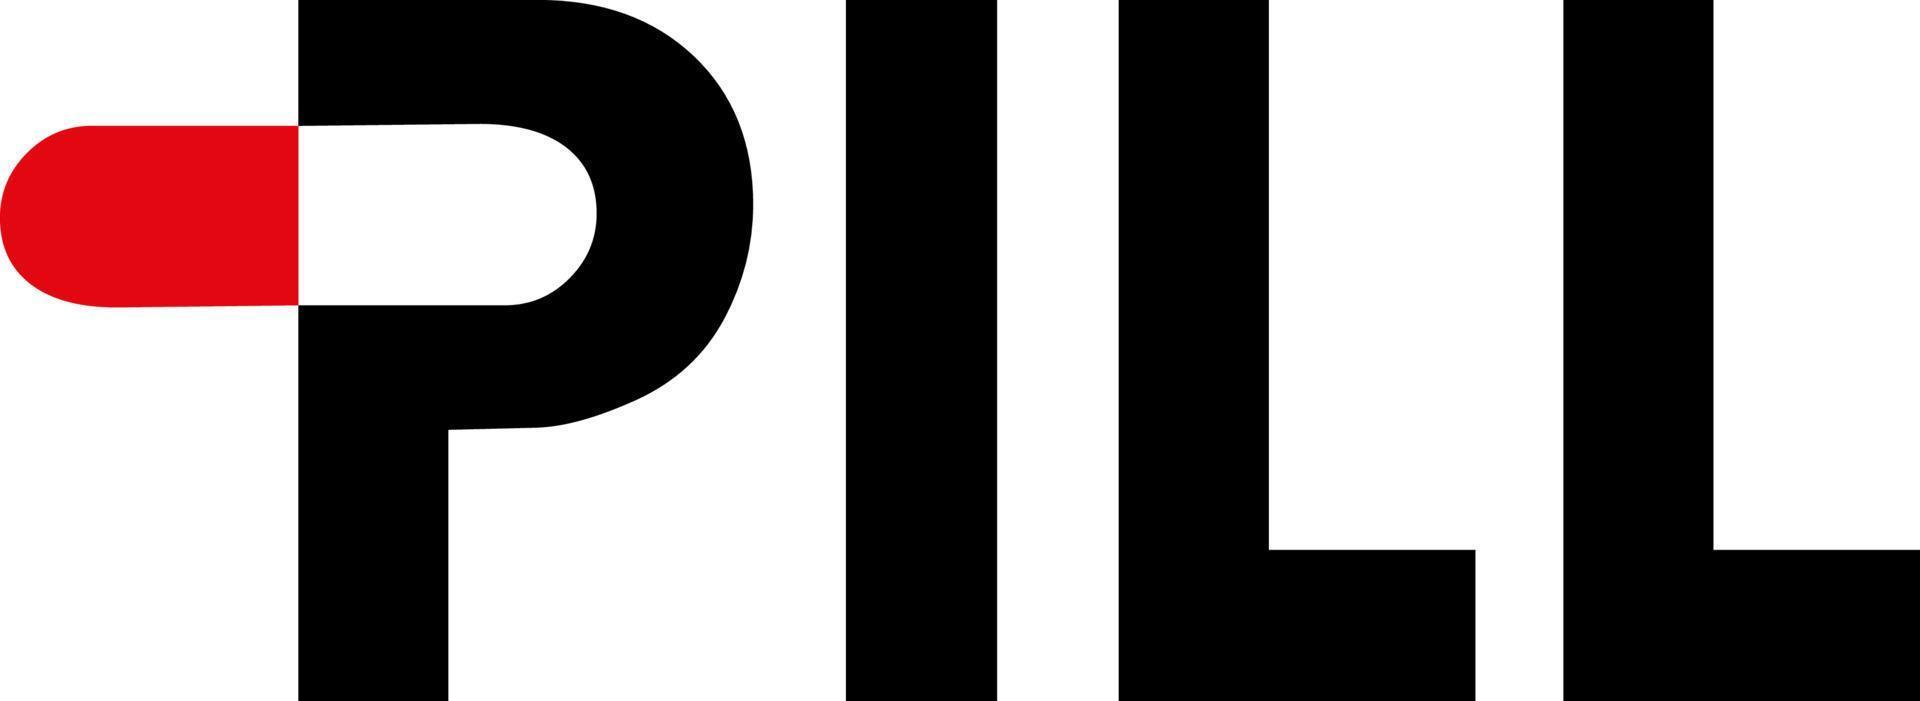 The Pill logo vector design.